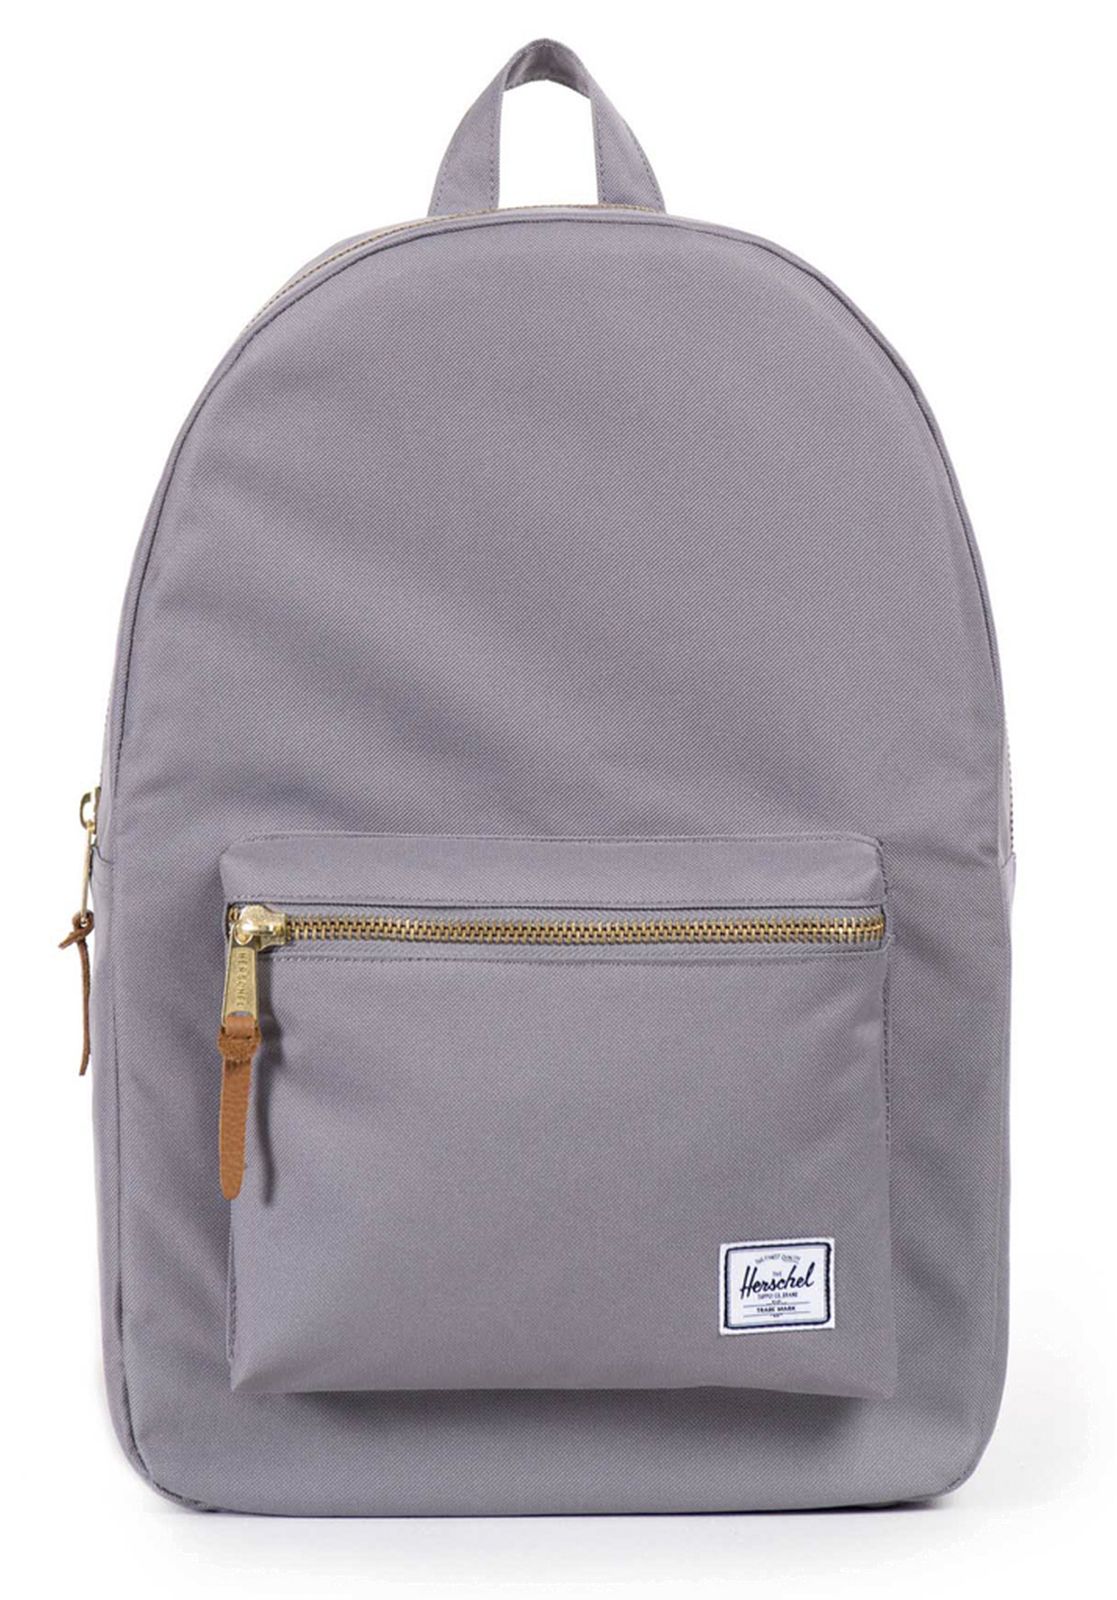 Herschel Settlement Backpack Grey | Buy bags, purses & accessories ...